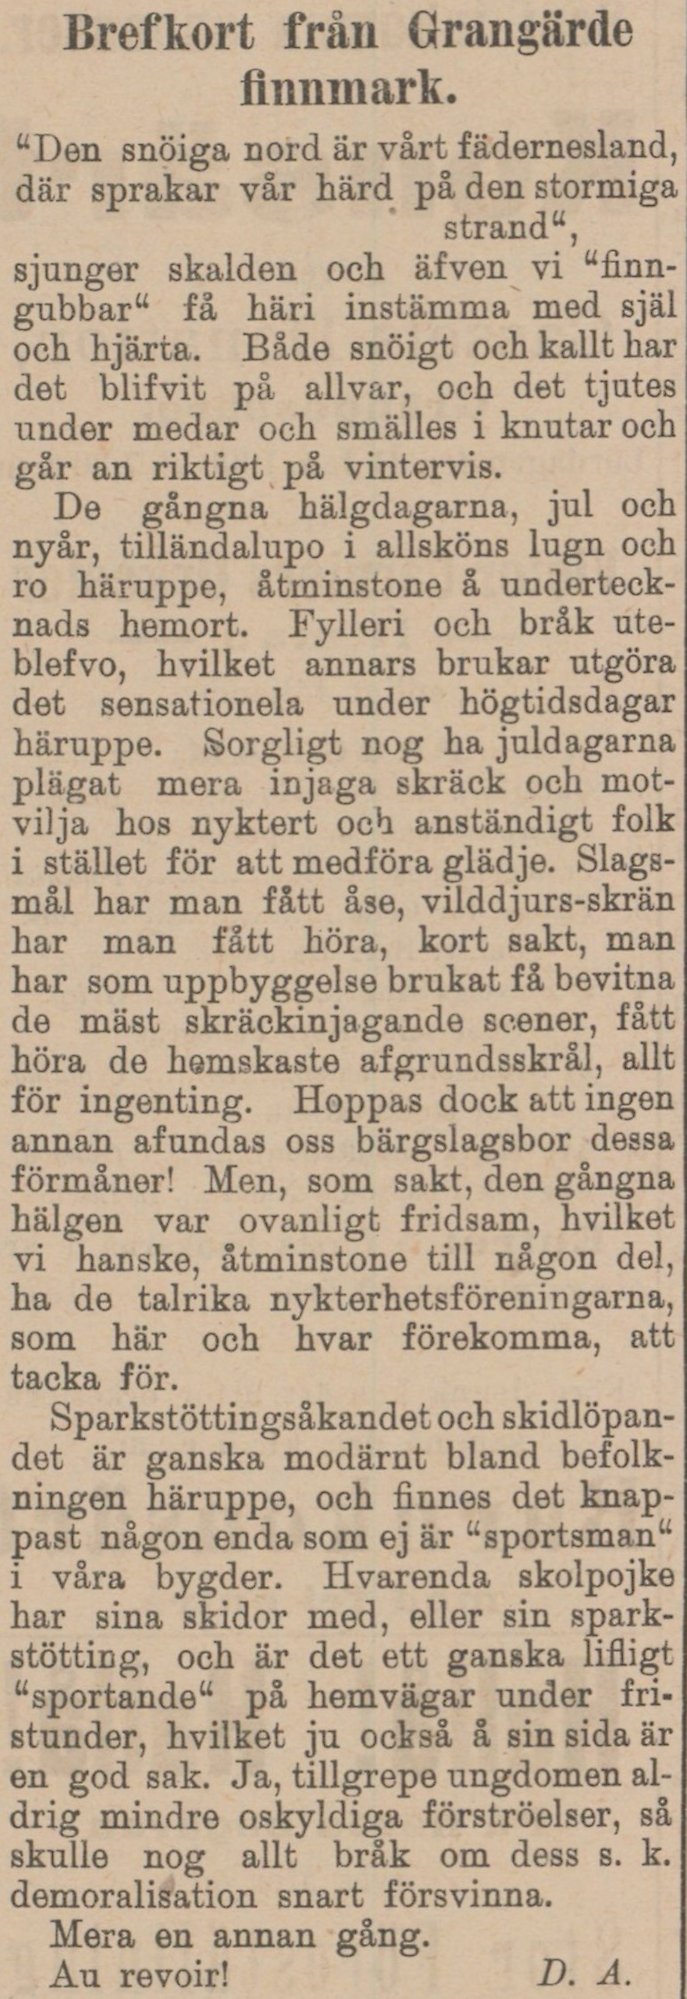 Gulnat tidningsklipp. Text: Brefkort från Grangärde finnmark